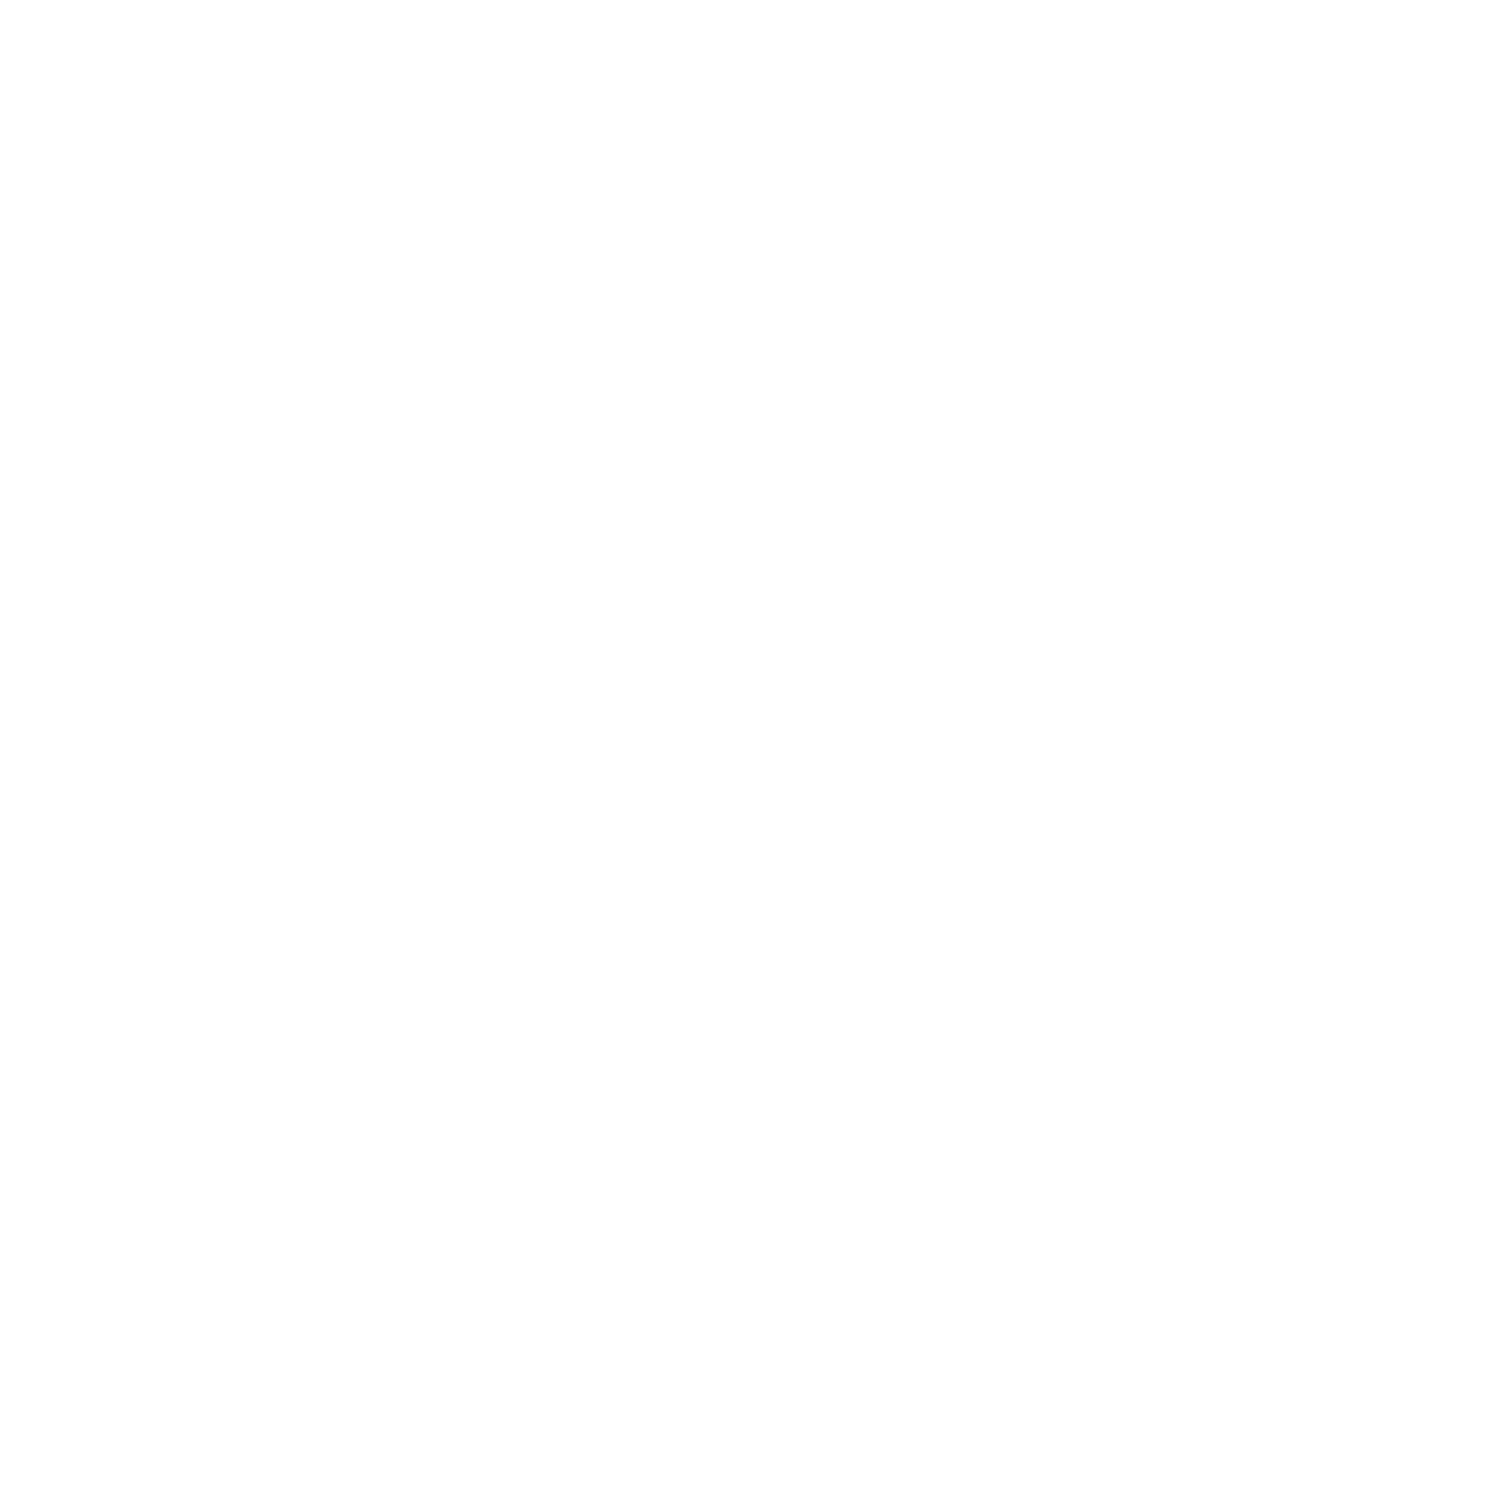 Pryde Meats